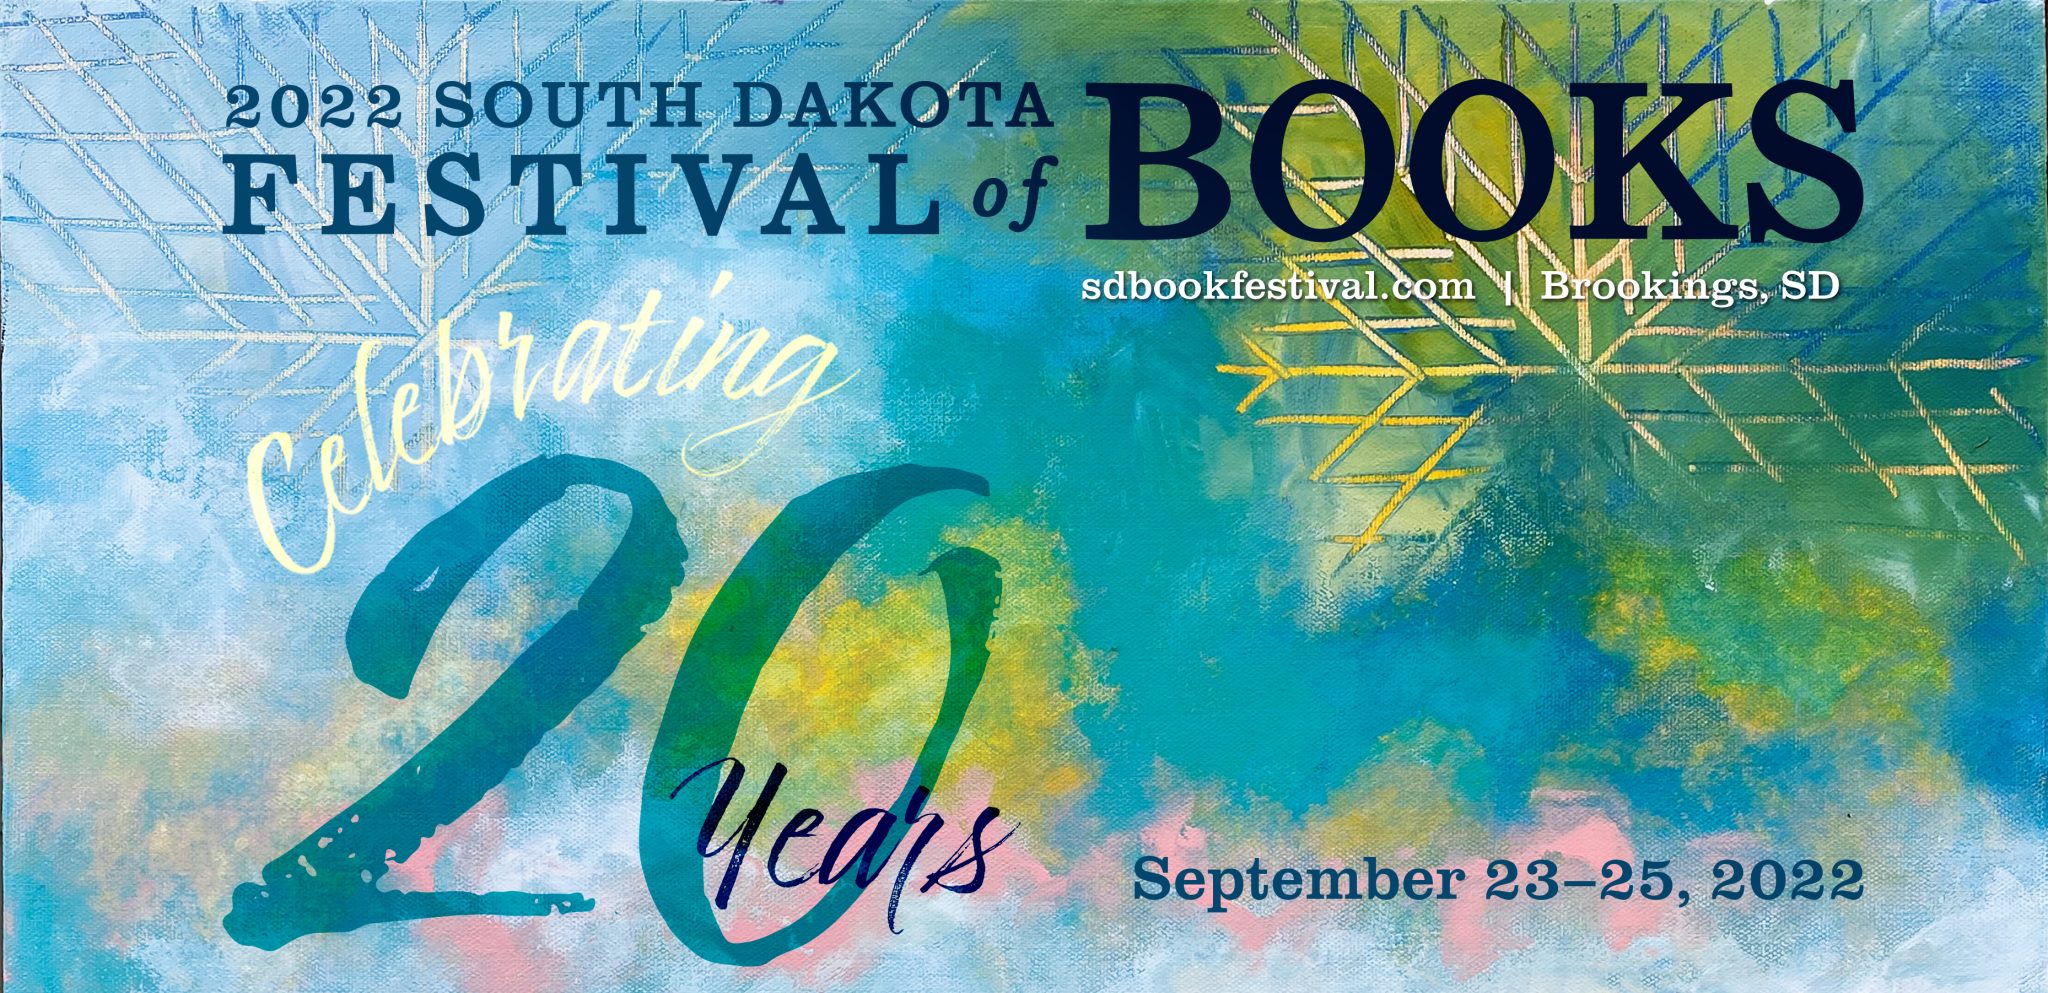 2022 Festival of Books Author Lineup Announced South Dakota